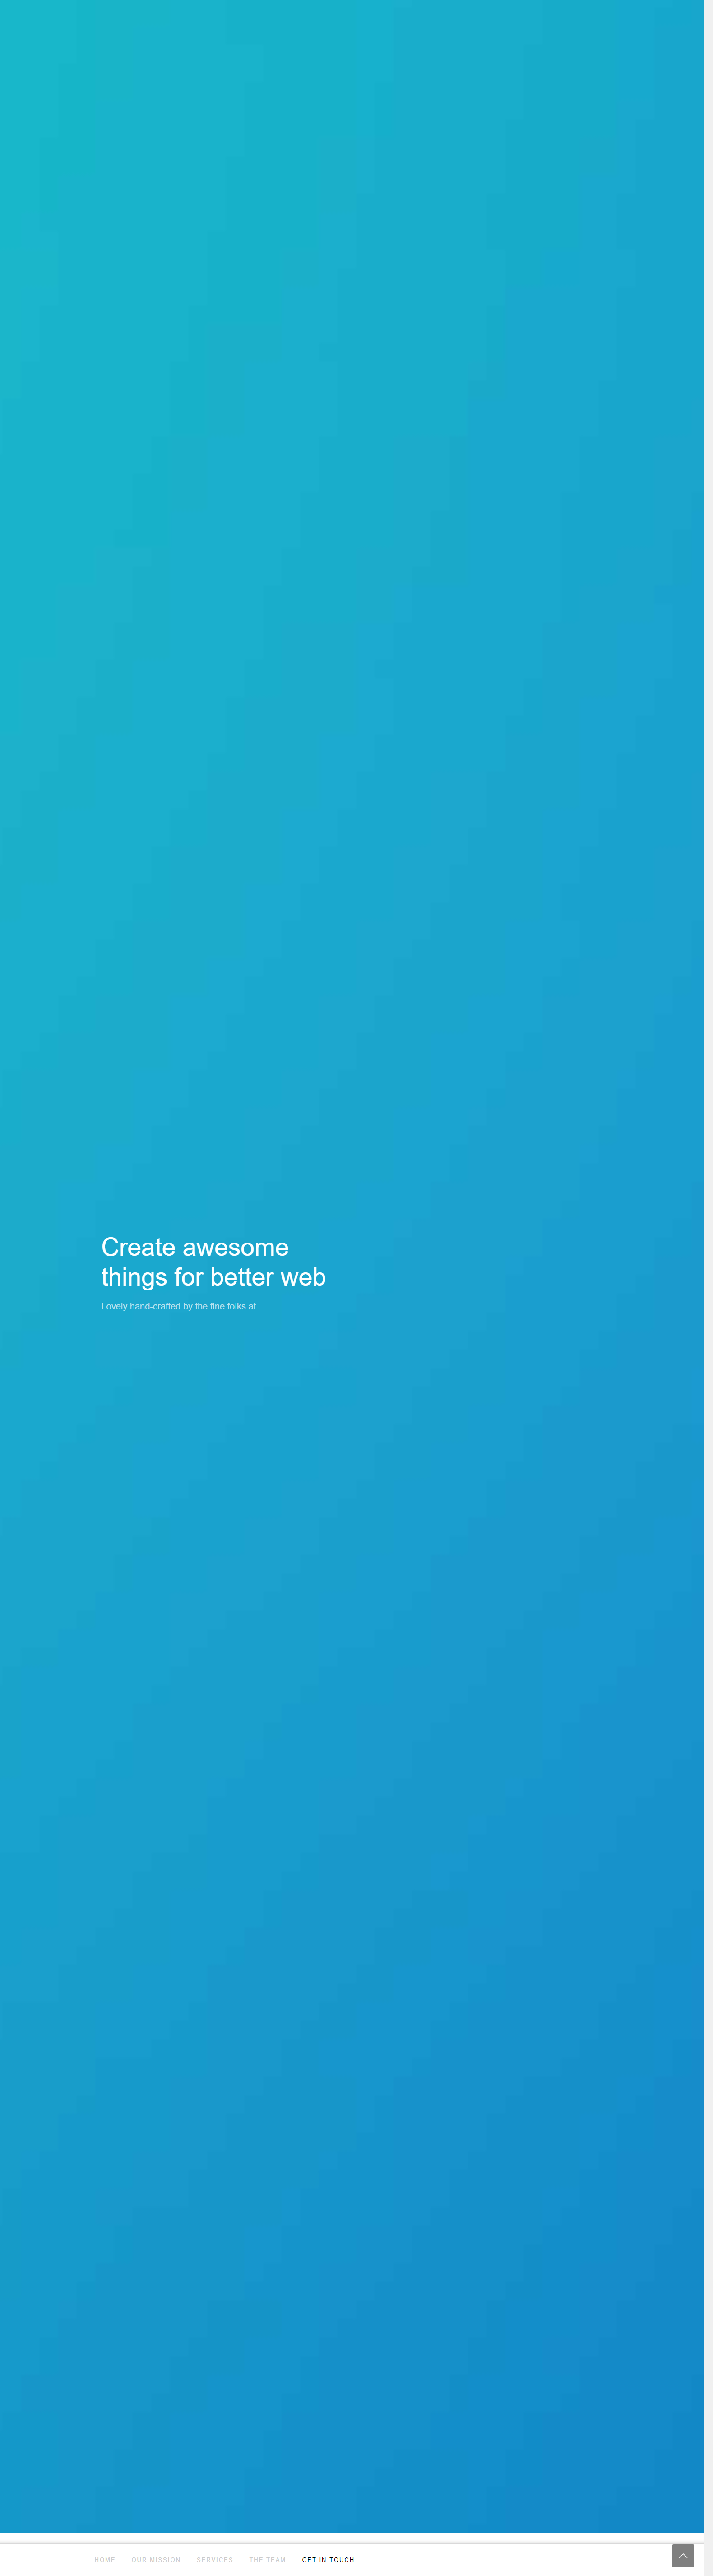 蓝色大气风格的响应式企业网站模板